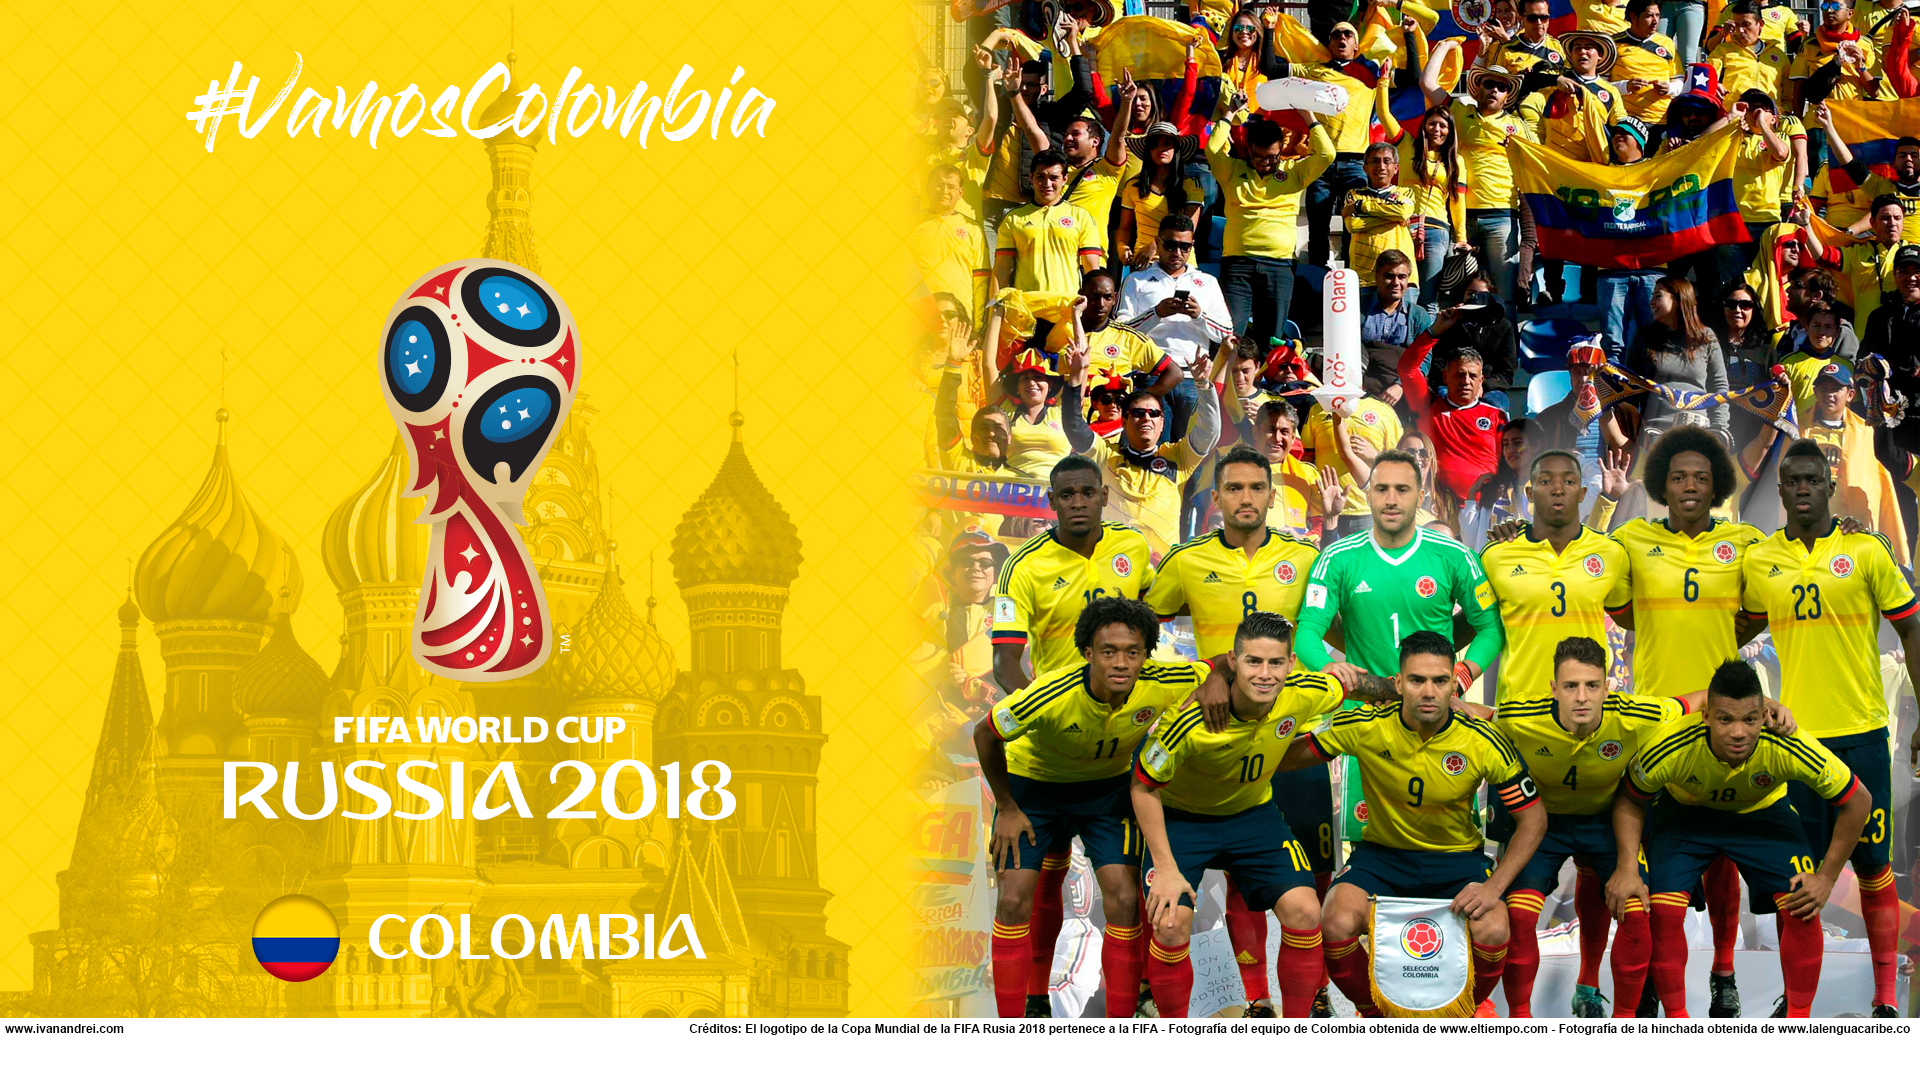 Wallpaper de la selección colombiana de fútbol para la Copa Mundial de la FIFA - Rusia 2018 - Edición para PC (1920x1080)